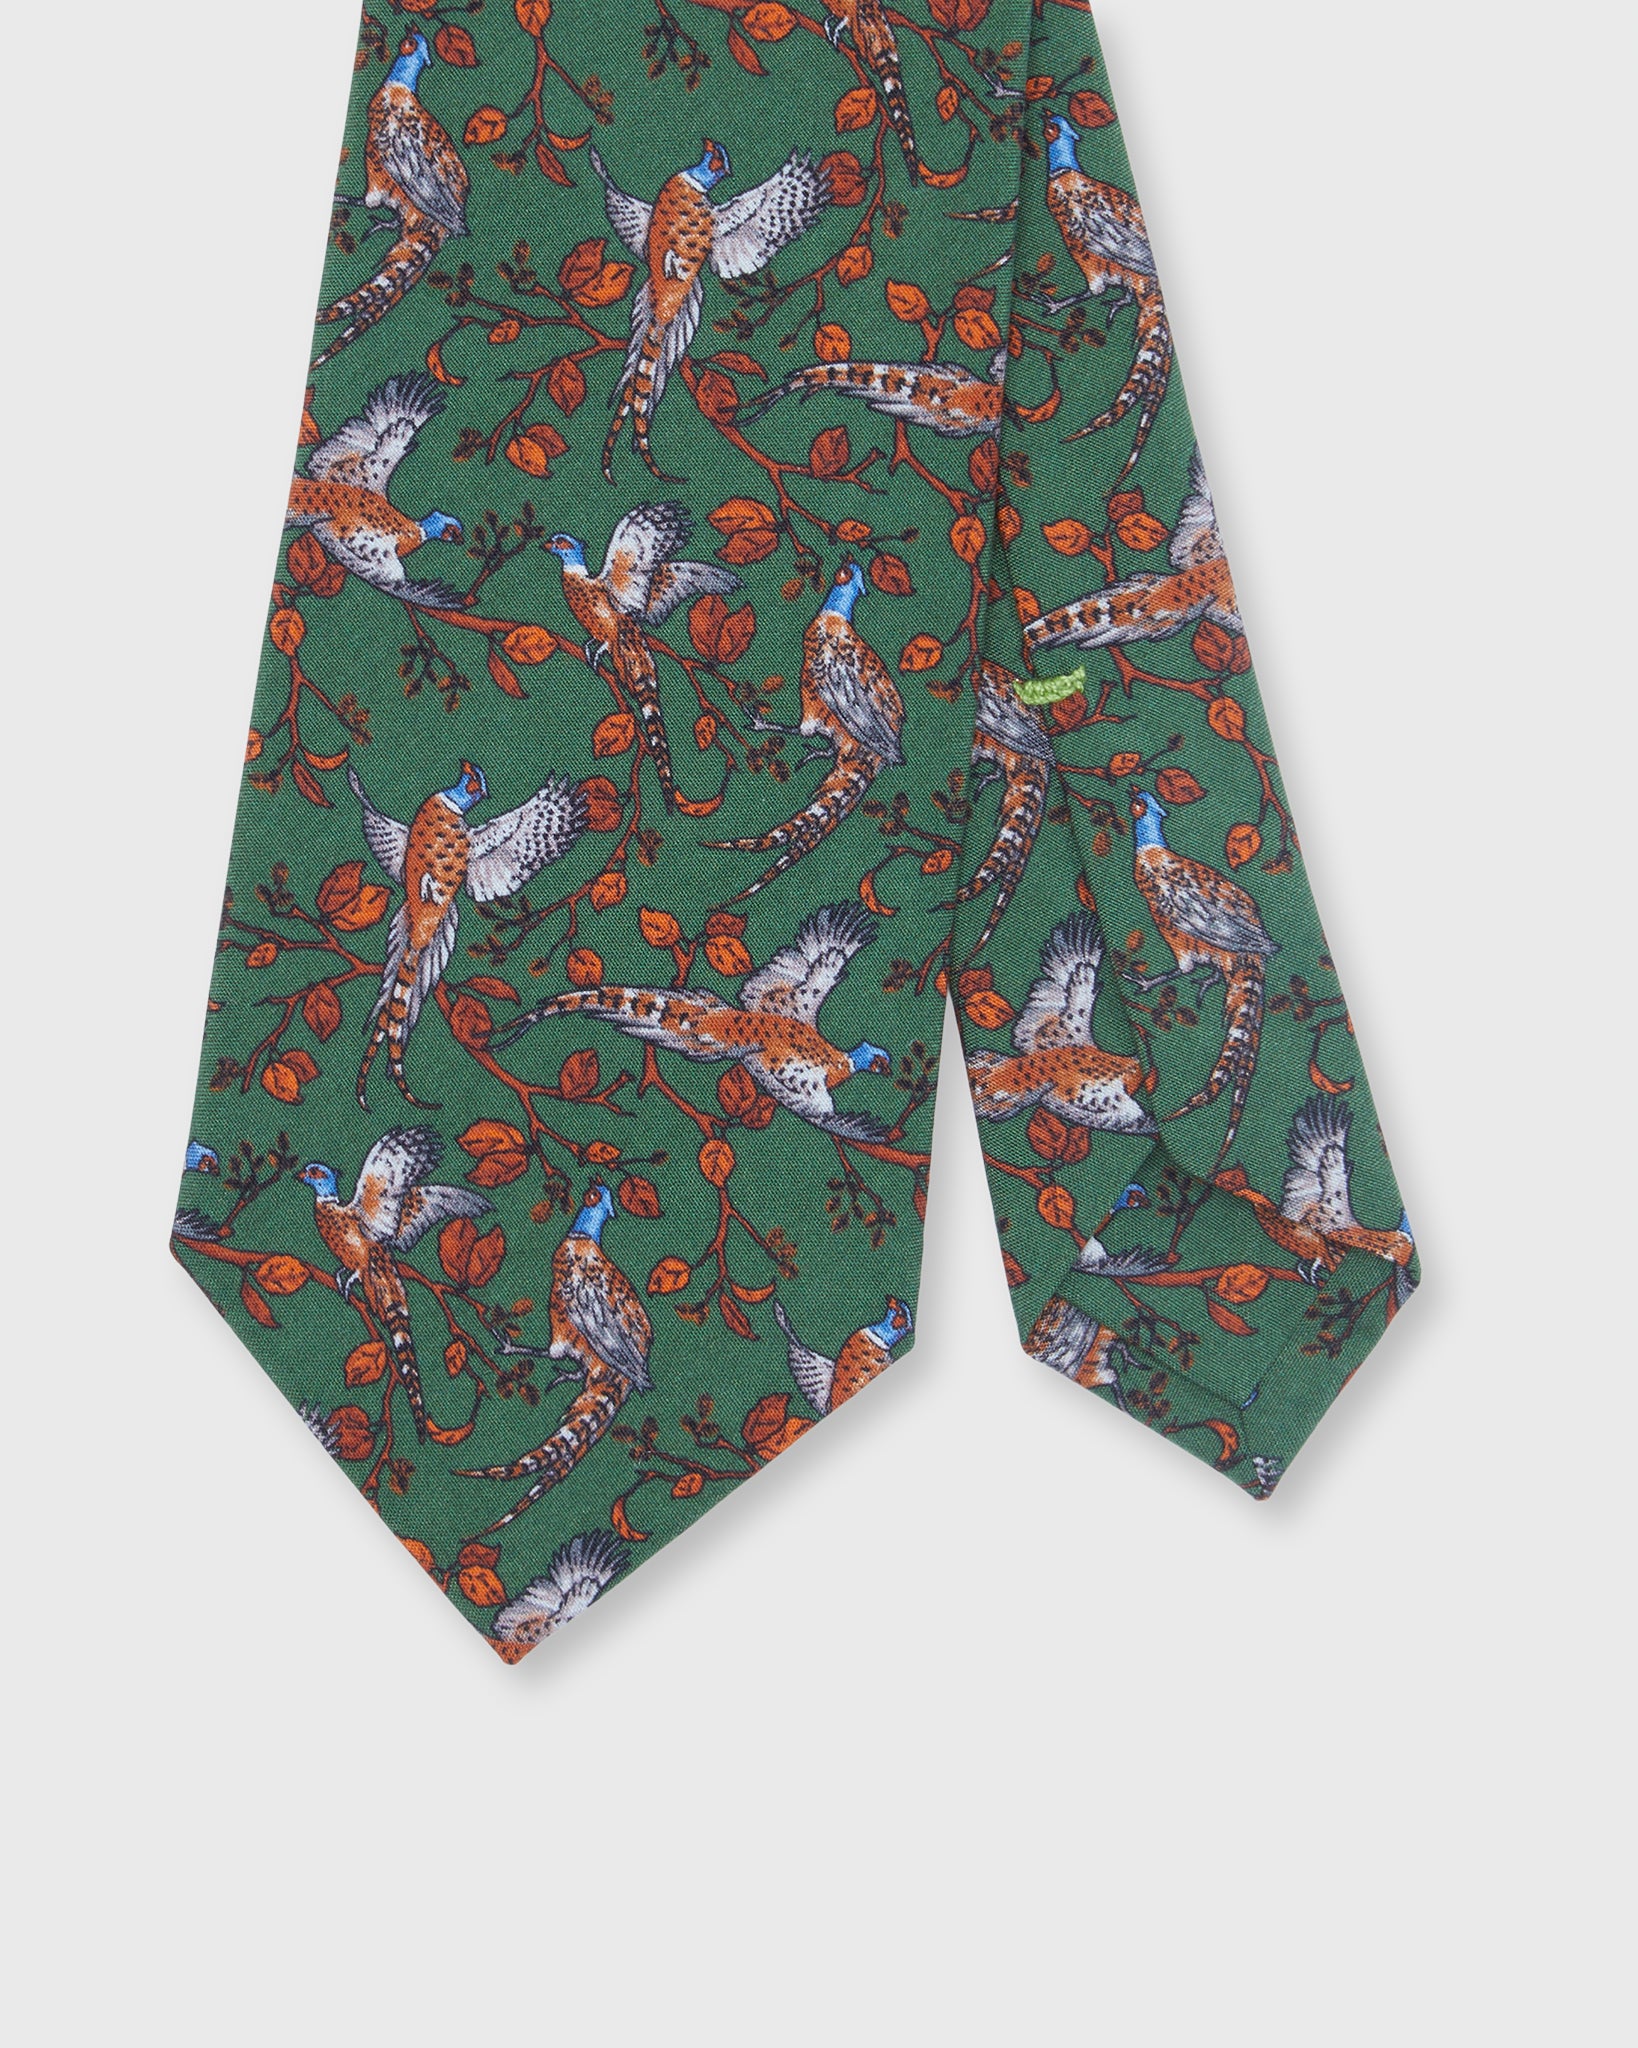 Silk Print Tie in Olive/Rust Pheasant